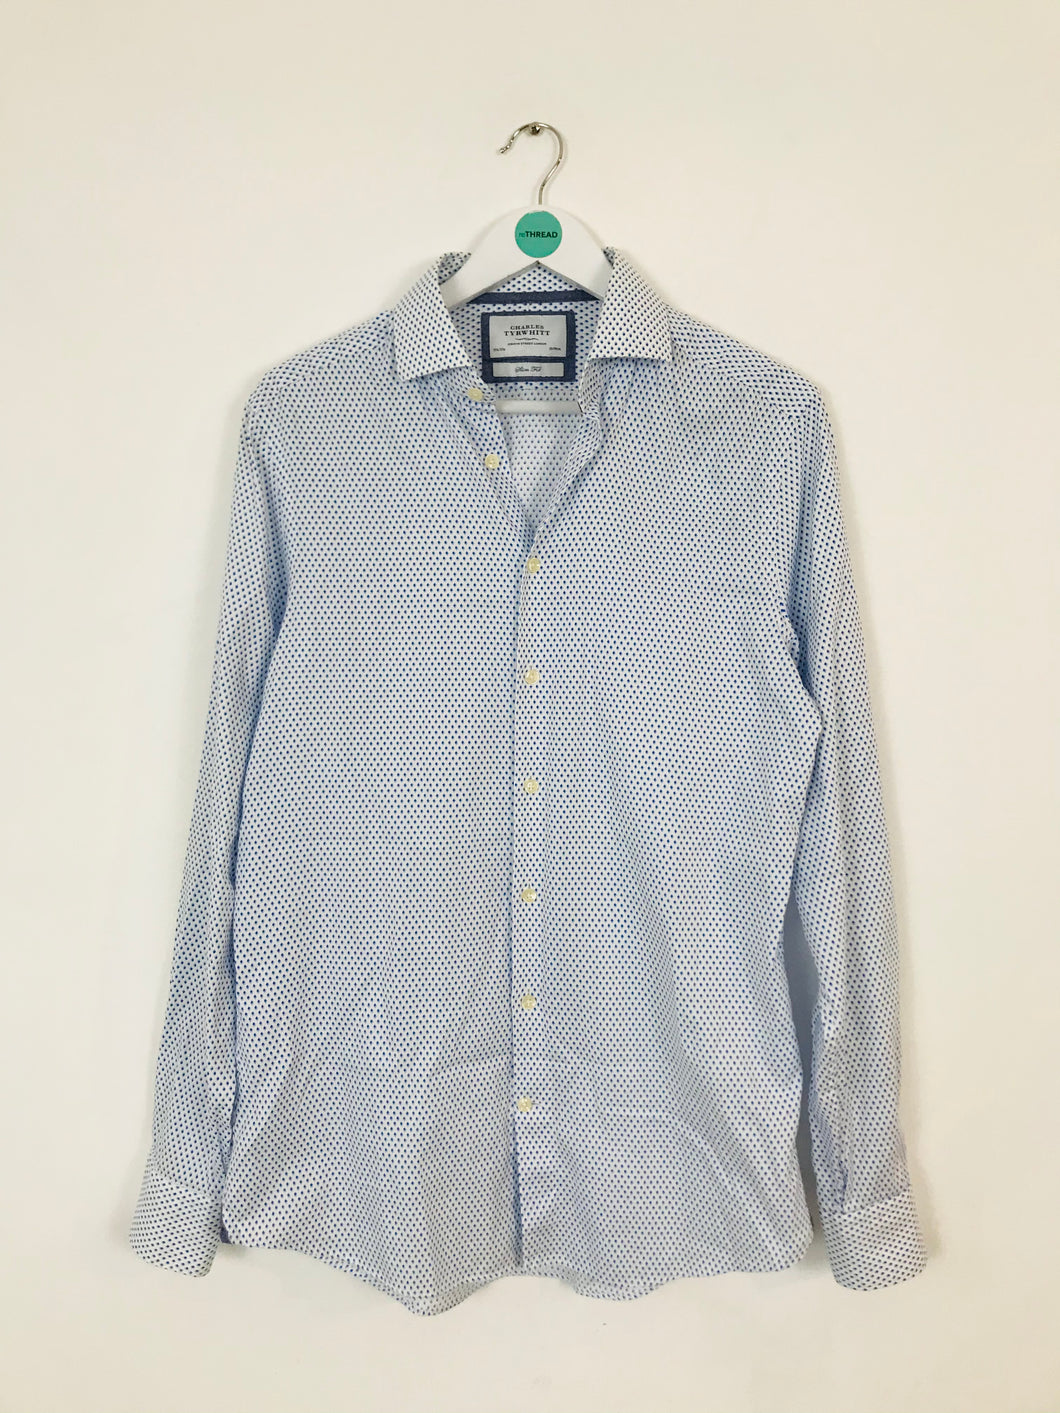 Charles Tyrwhitt Men’s Diamond Print Slim Fit Shirt | 15.5 / 37” 39/94cm | White and blue